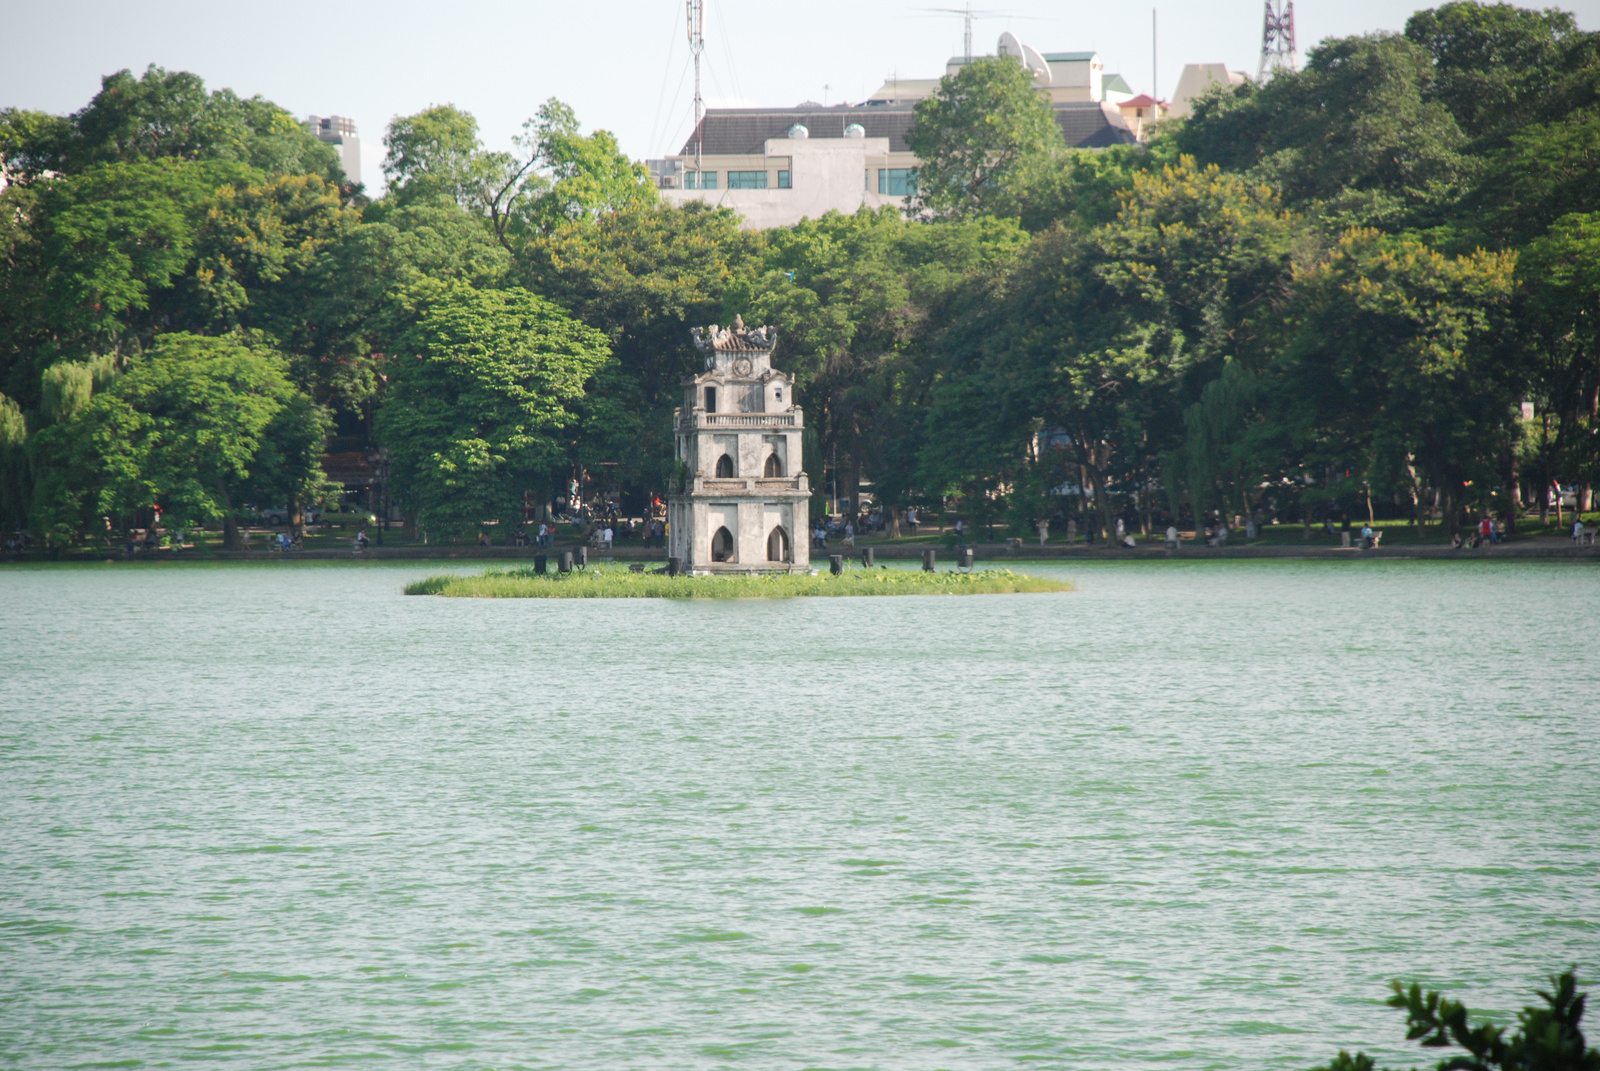 Pagoda on lake